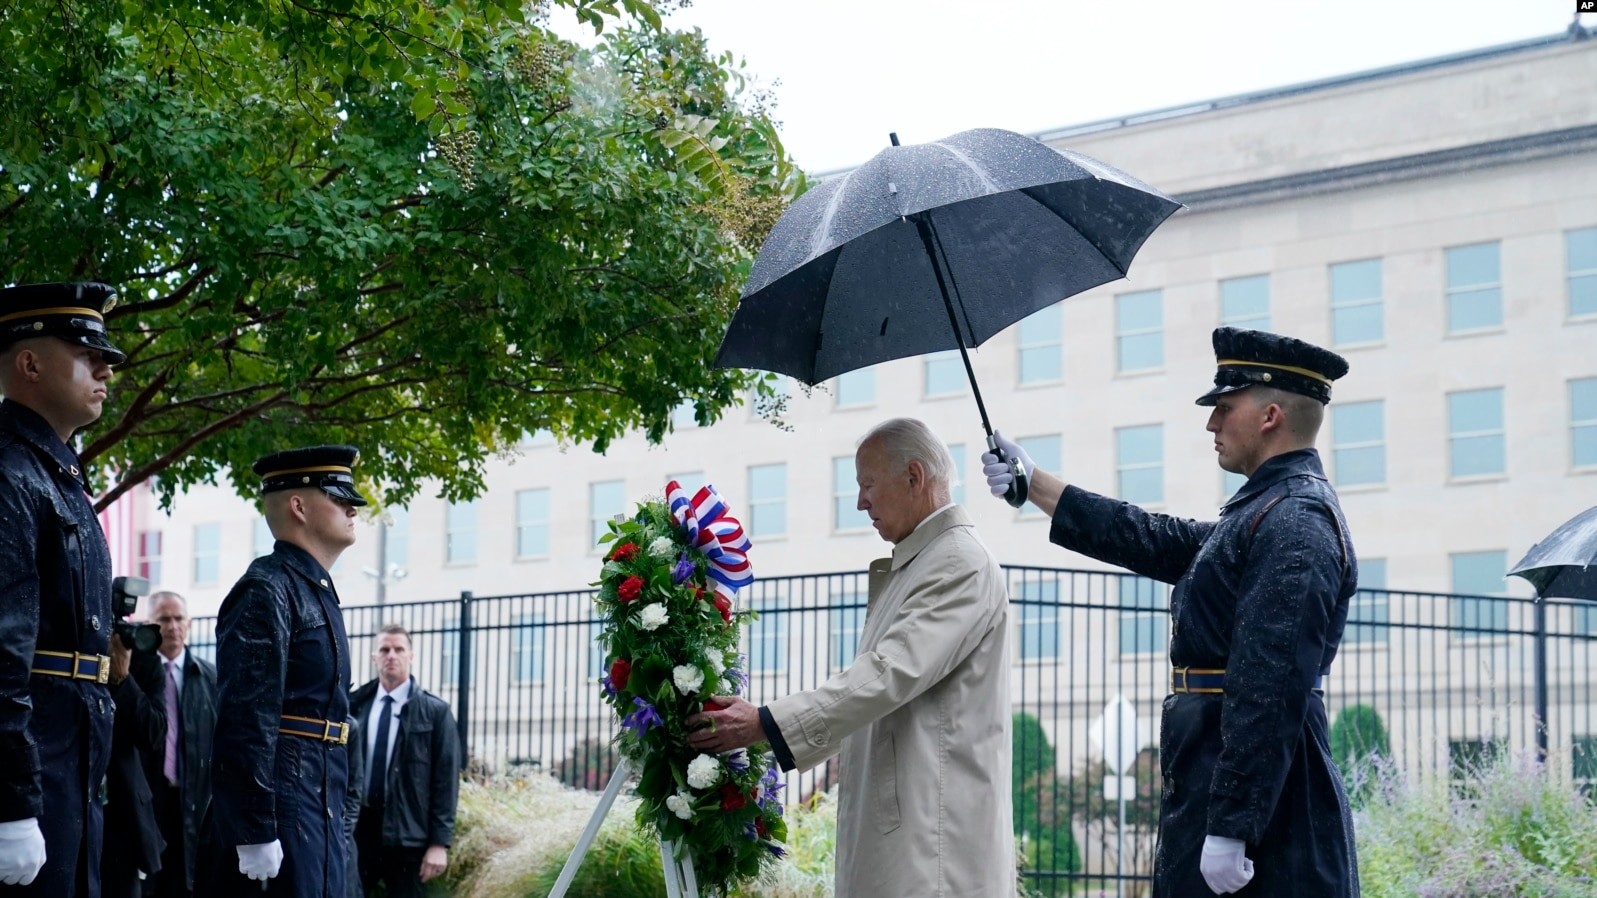 El presidente Joe Biden participa en una ceremonia de colocación de una ofrenda floral durante su visita al Pentágono en Washington, el domingo 11 de septiembre de 2022, para honrar y recordar a las víctimas del ataque terrorista del 11 de septiembre. (Foto AP/Susan Walsh)